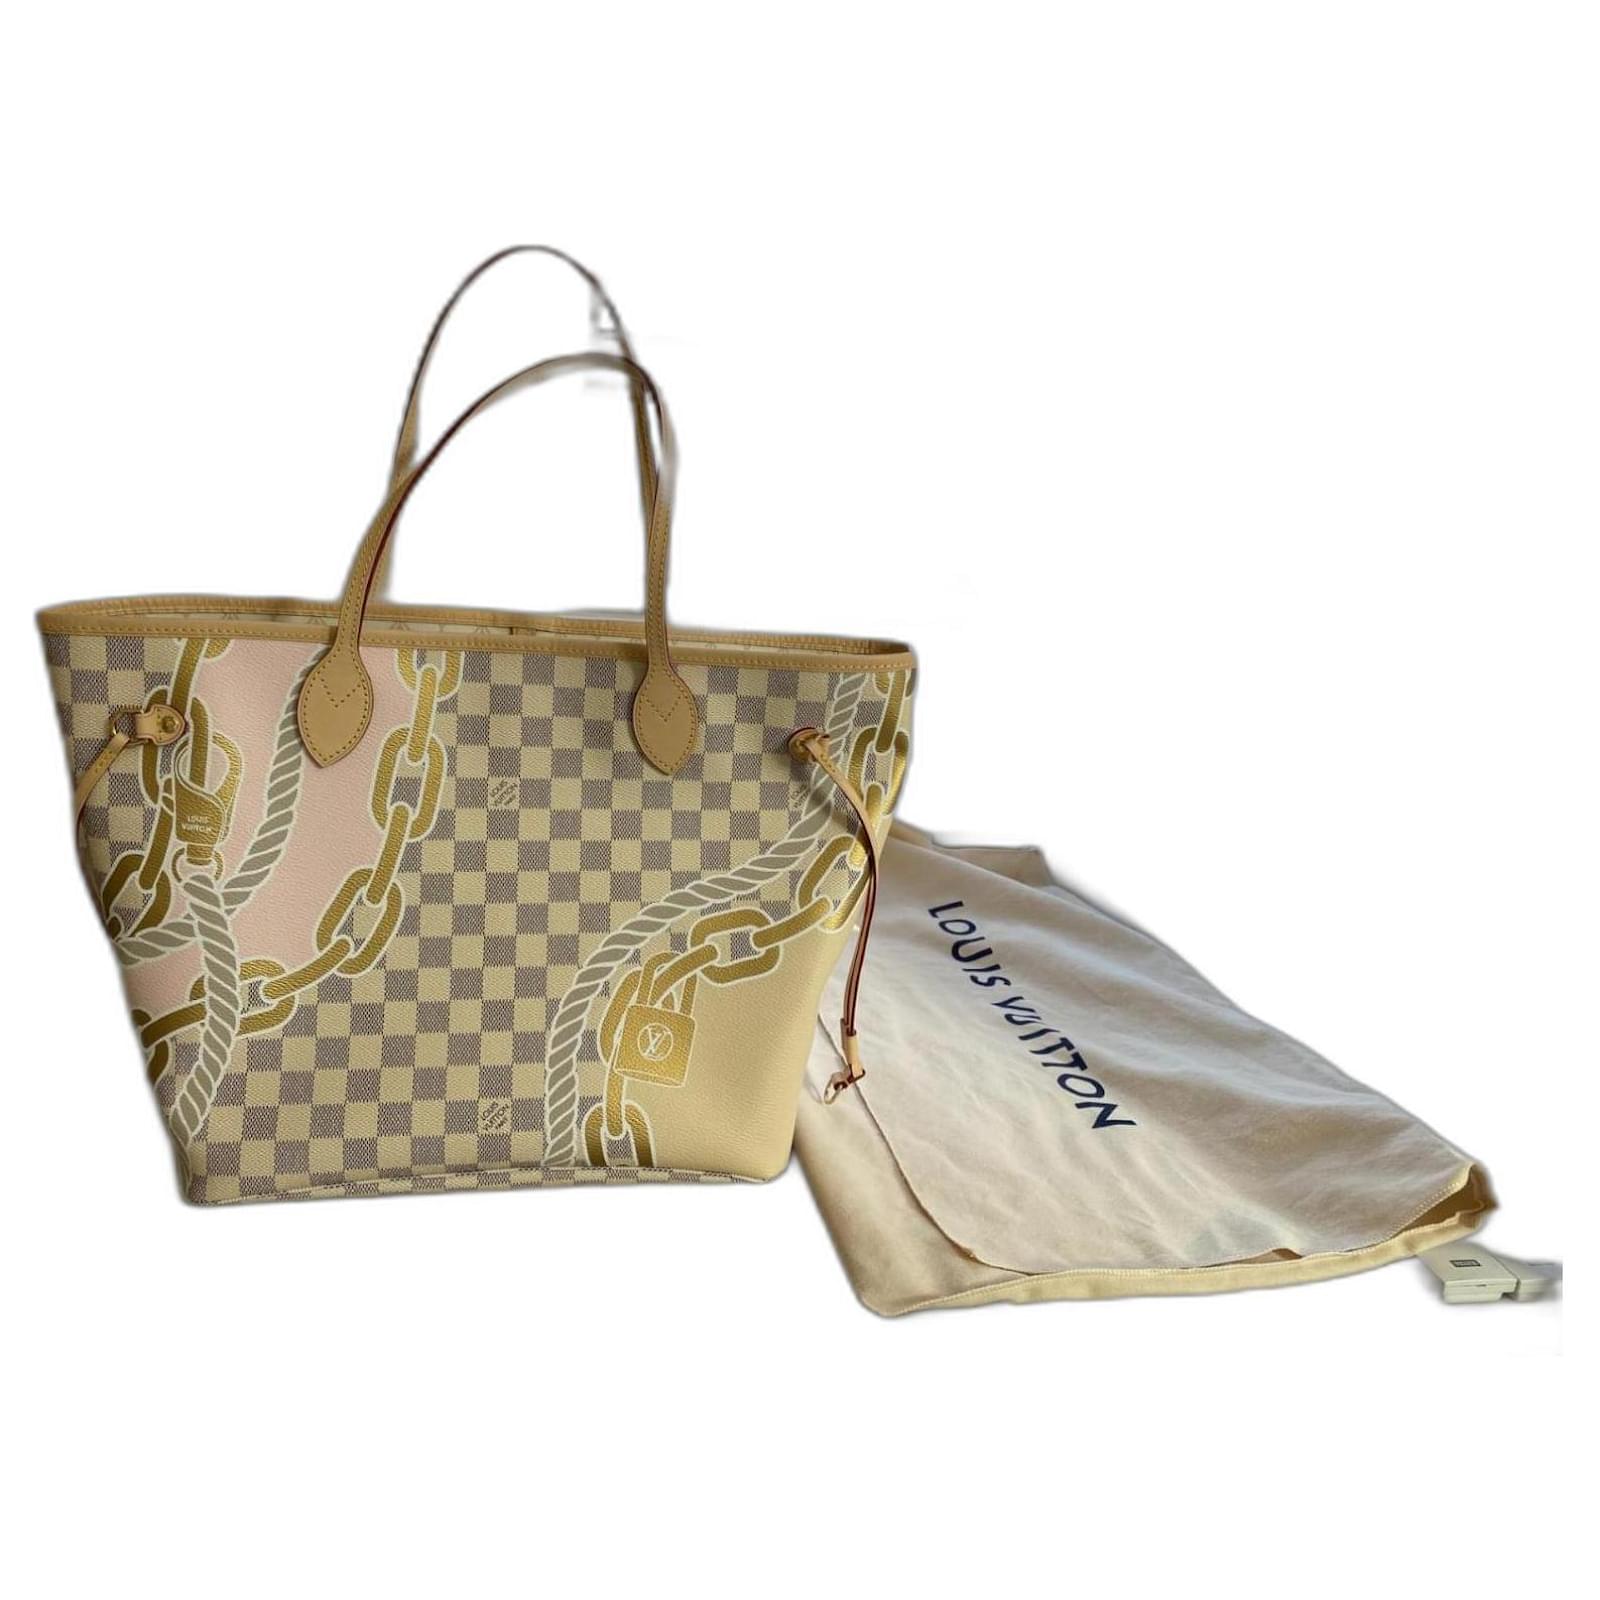 Neverfull MM Damier Azur Canvas - Women - Handbags